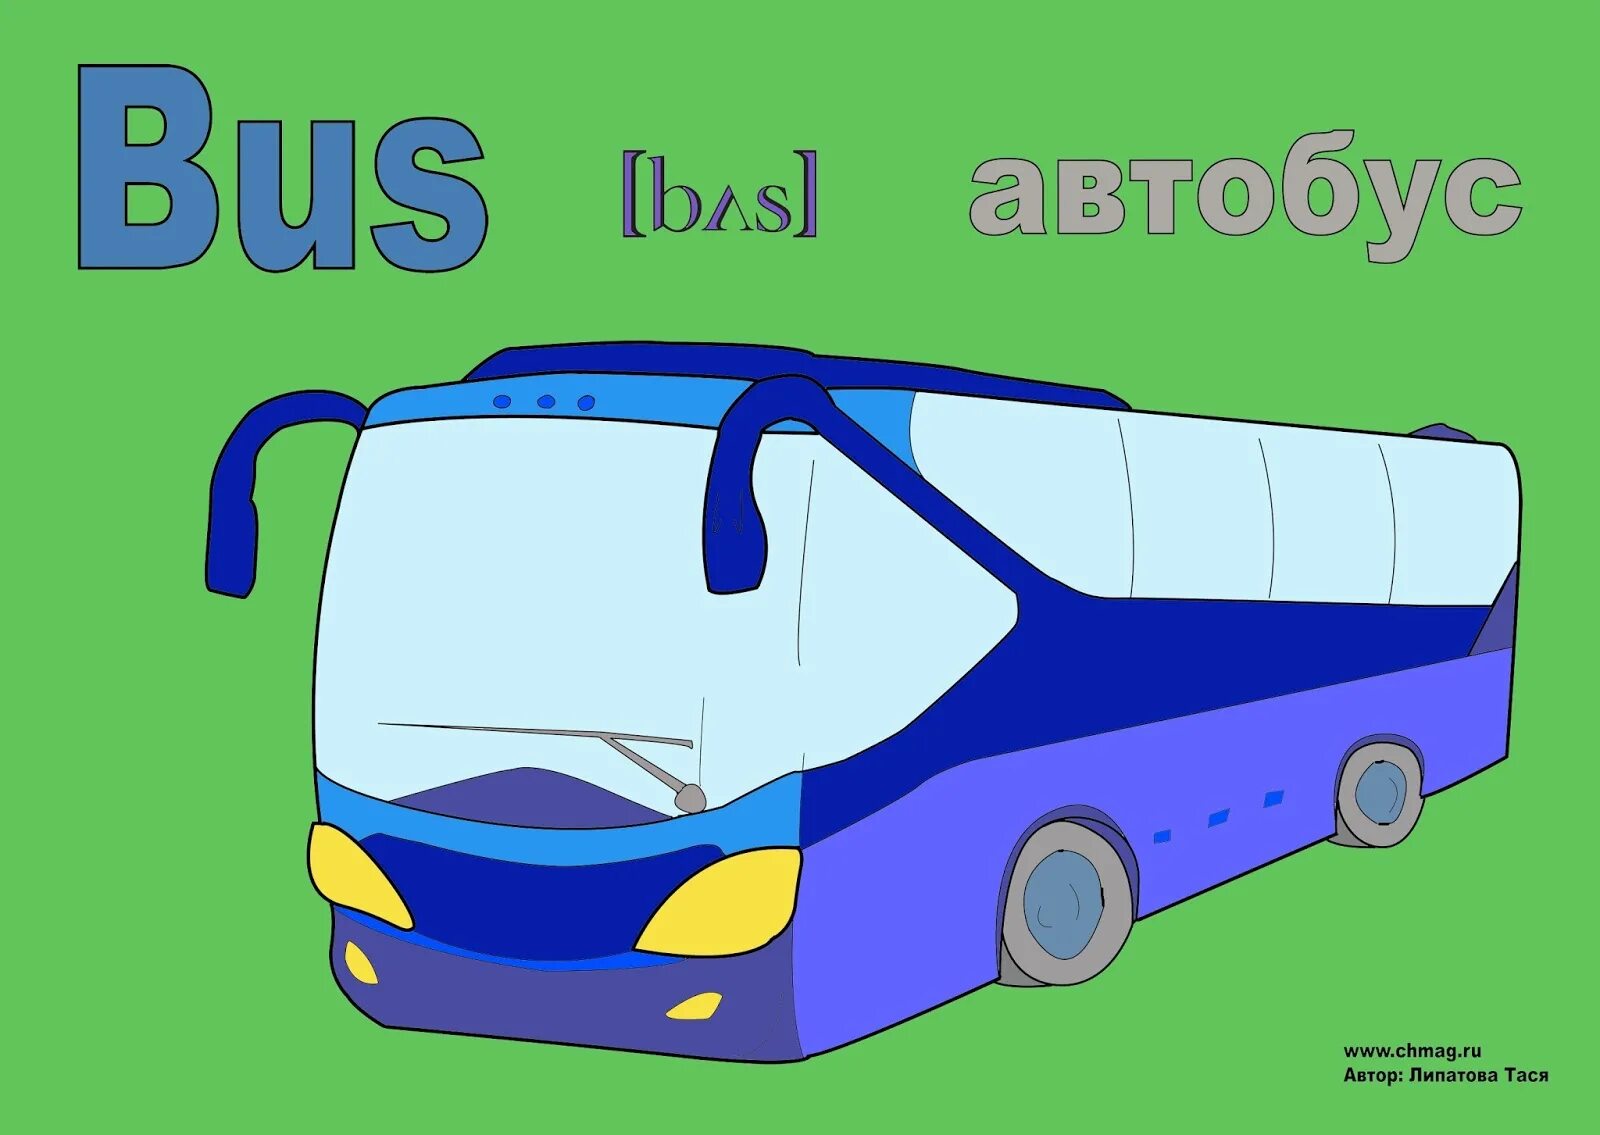 Автобус картинка. Автобус на английском языке. Английское слово автобус. Автобус иллюстрация. Машина произносится